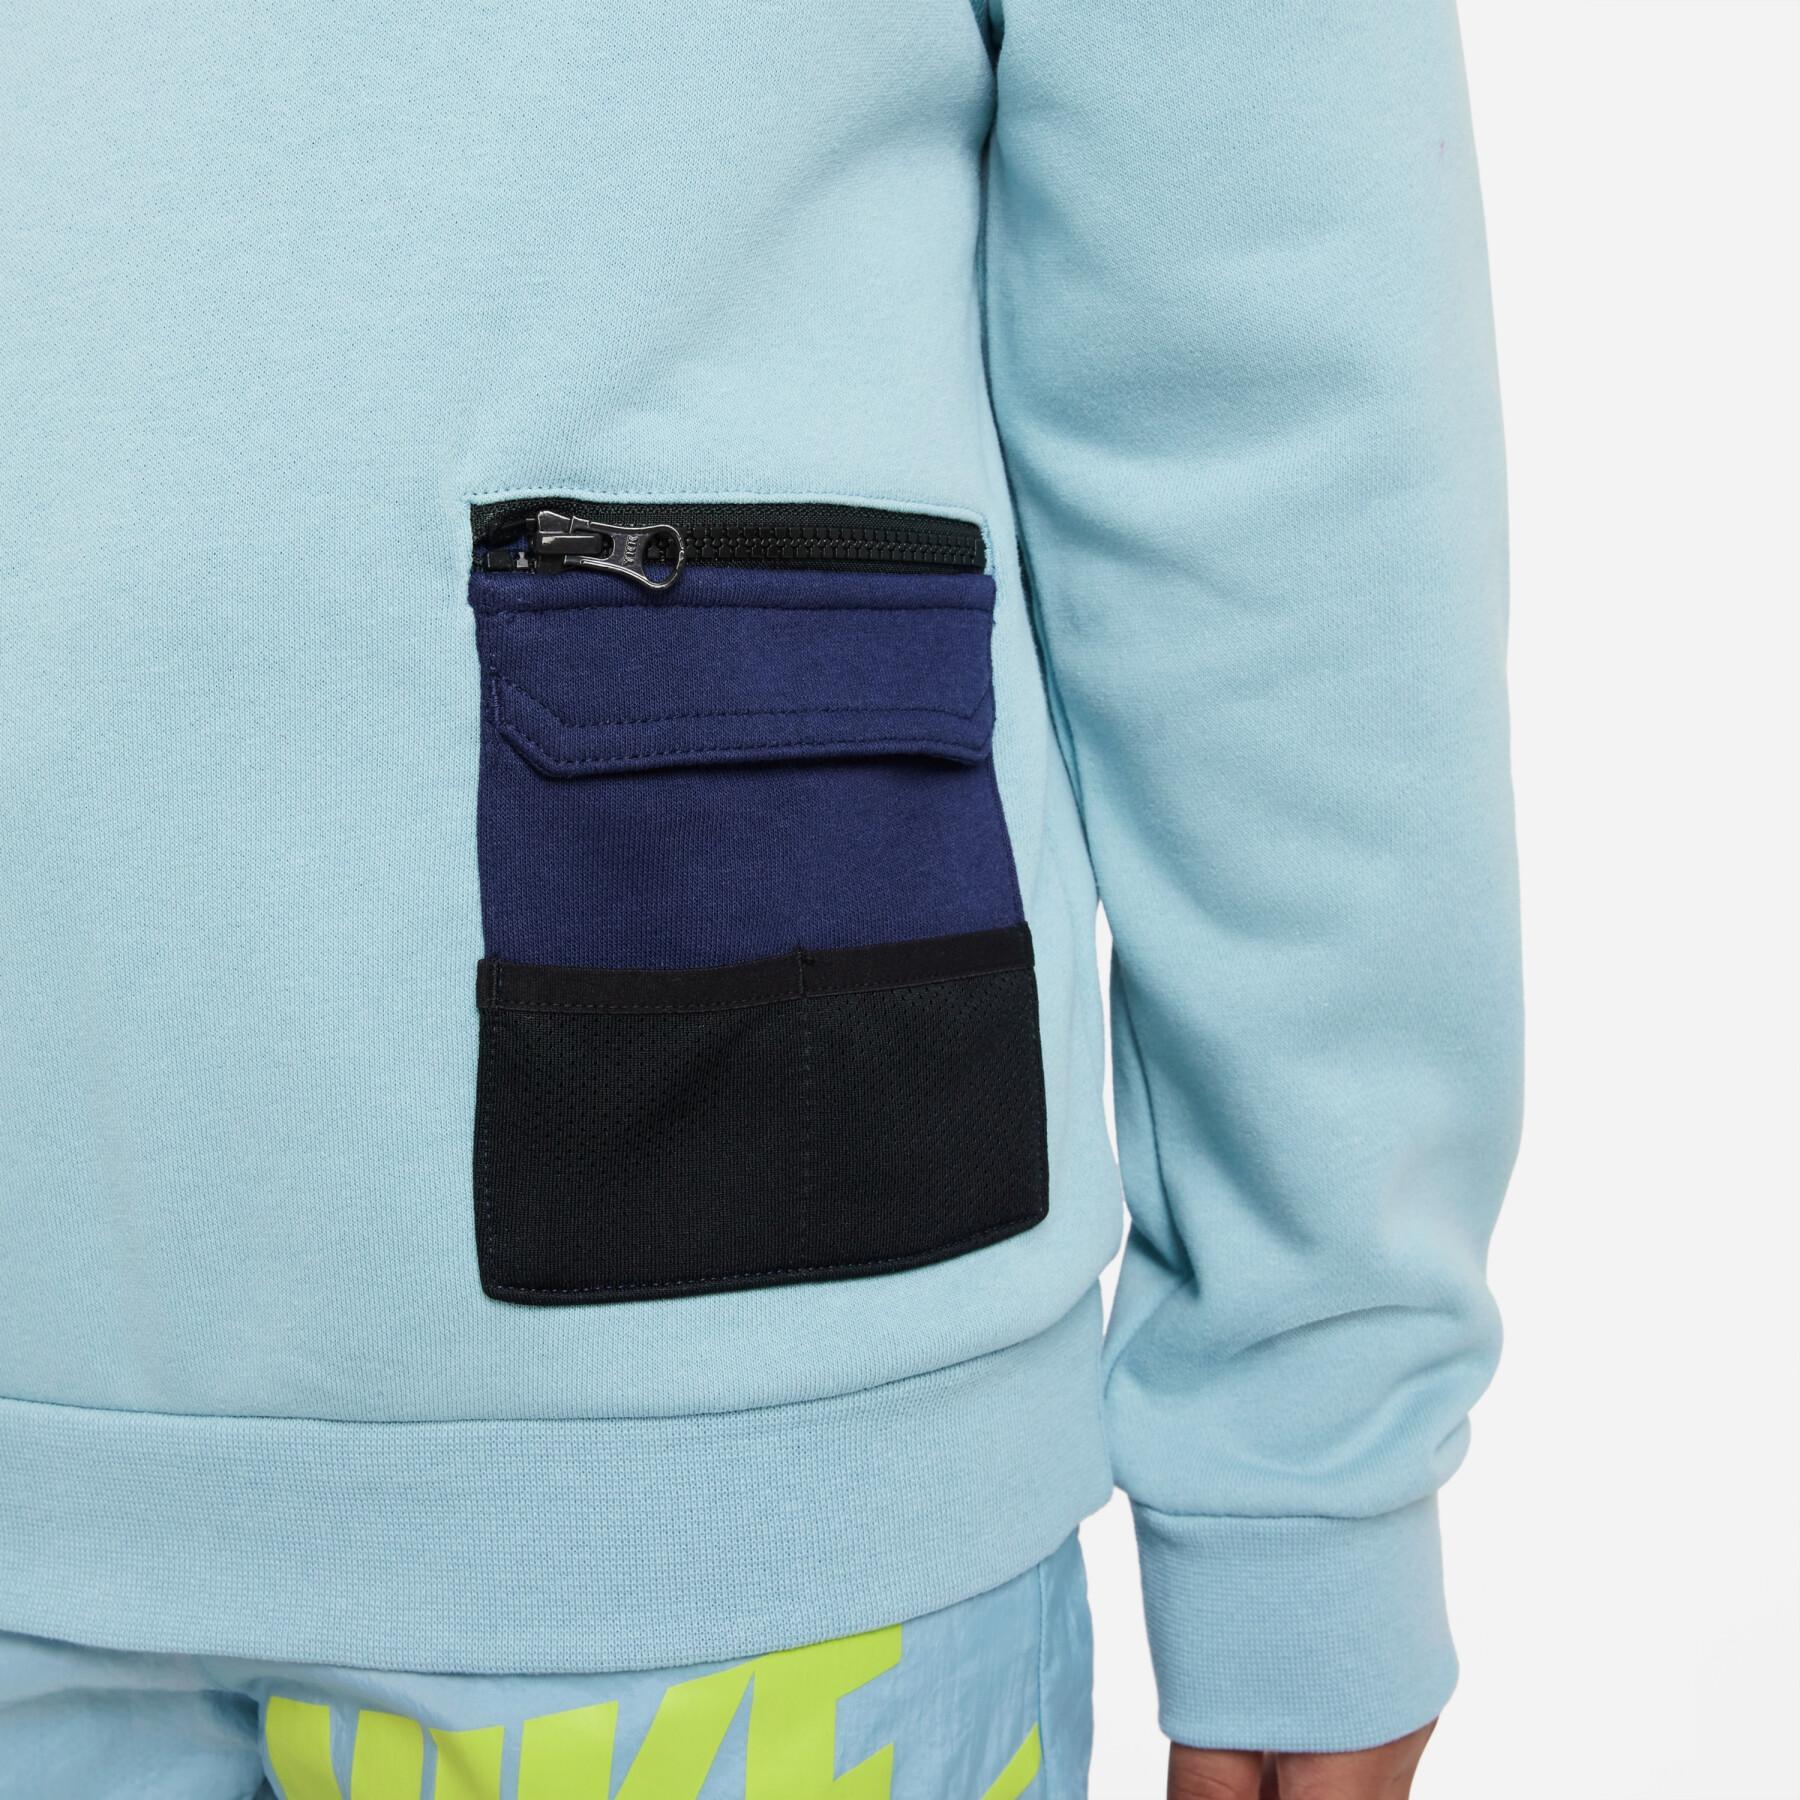 Cargo-Sweatshirt Kind Nike